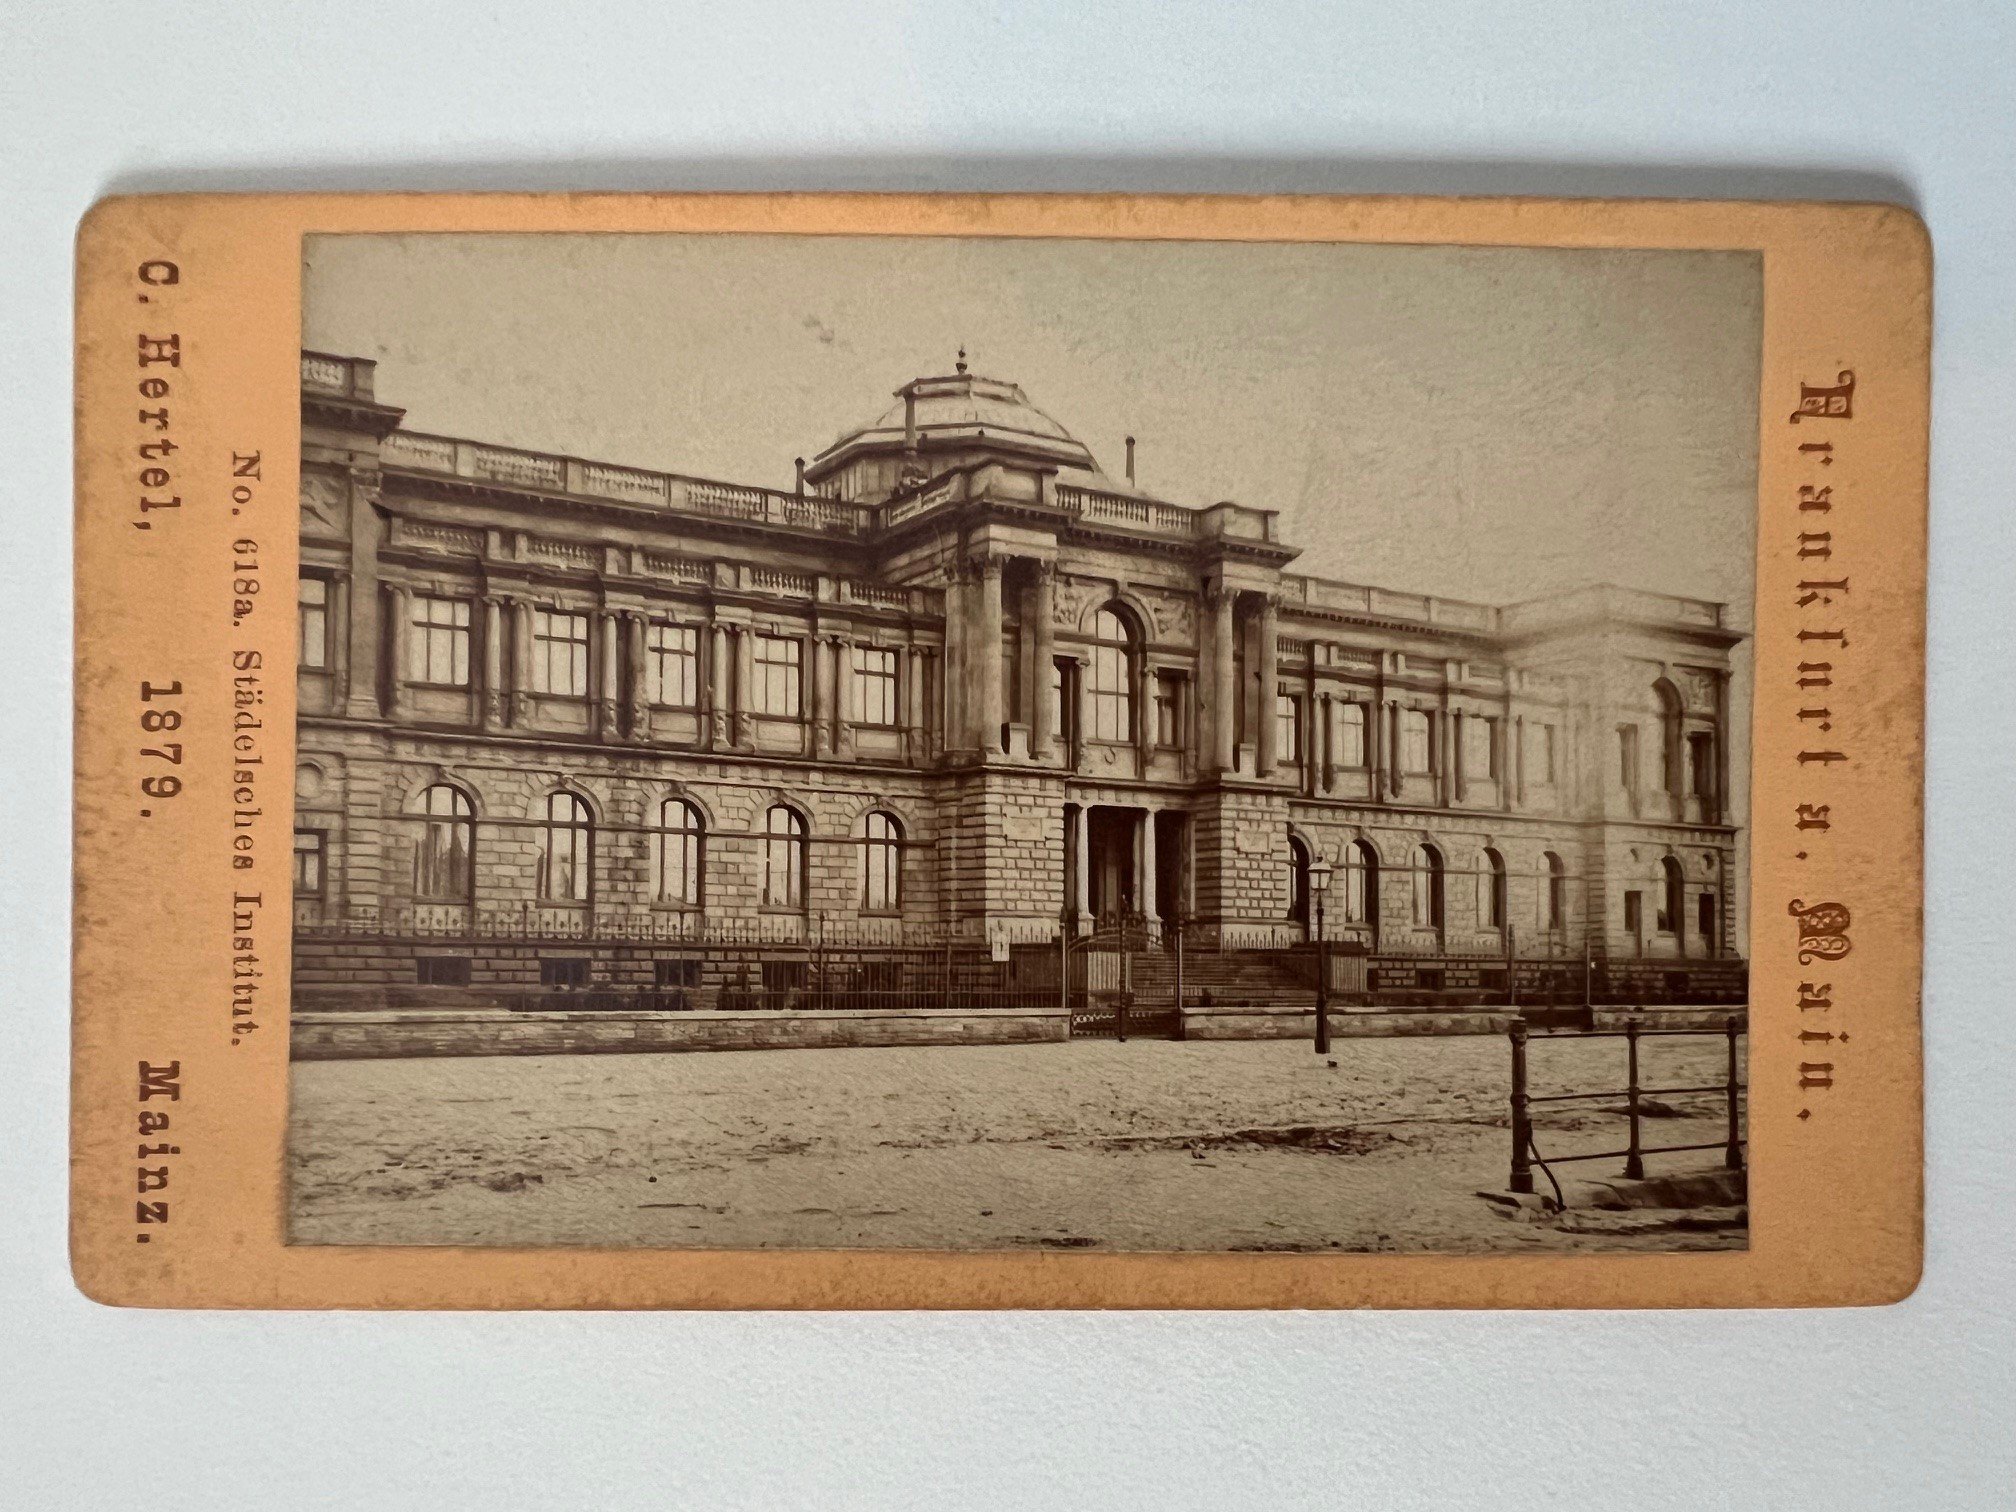 CdV, Carl Hertel, Frankfurt, Städelsches Institut, 1879. (Taunus-Rhein-Main - Regionalgeschichtliche Sammlung Dr. Stefan Naas CC BY-NC-SA)